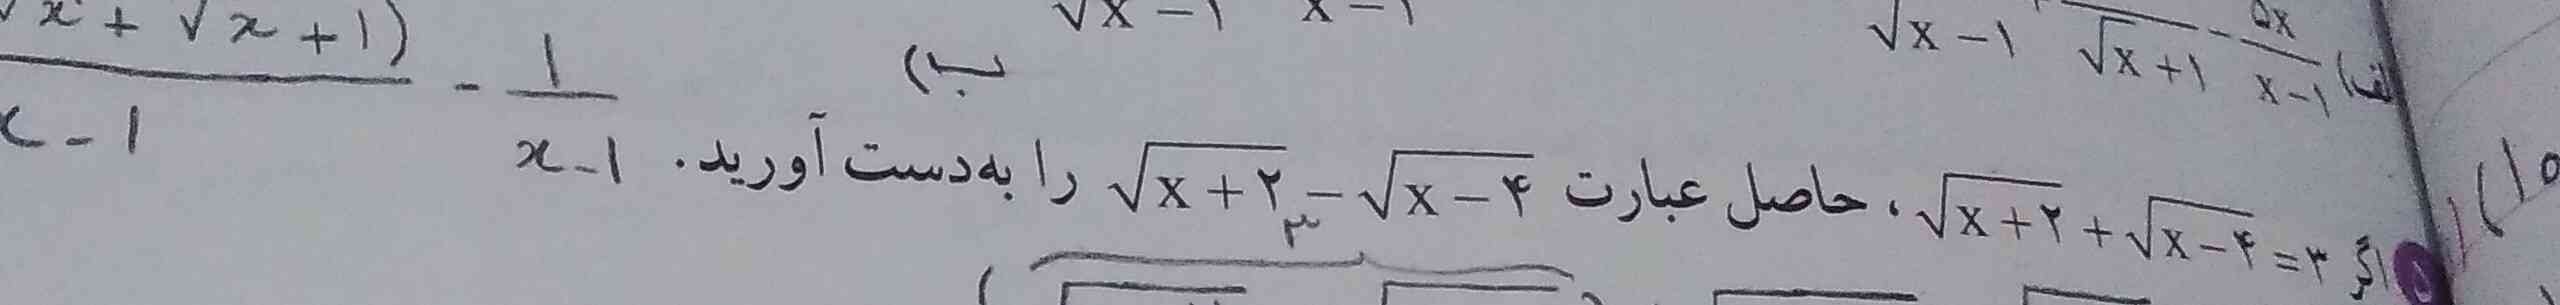 حل با توضیح= معرکه
لطفا بگید ۶ که بدست میارید از کجا میاد